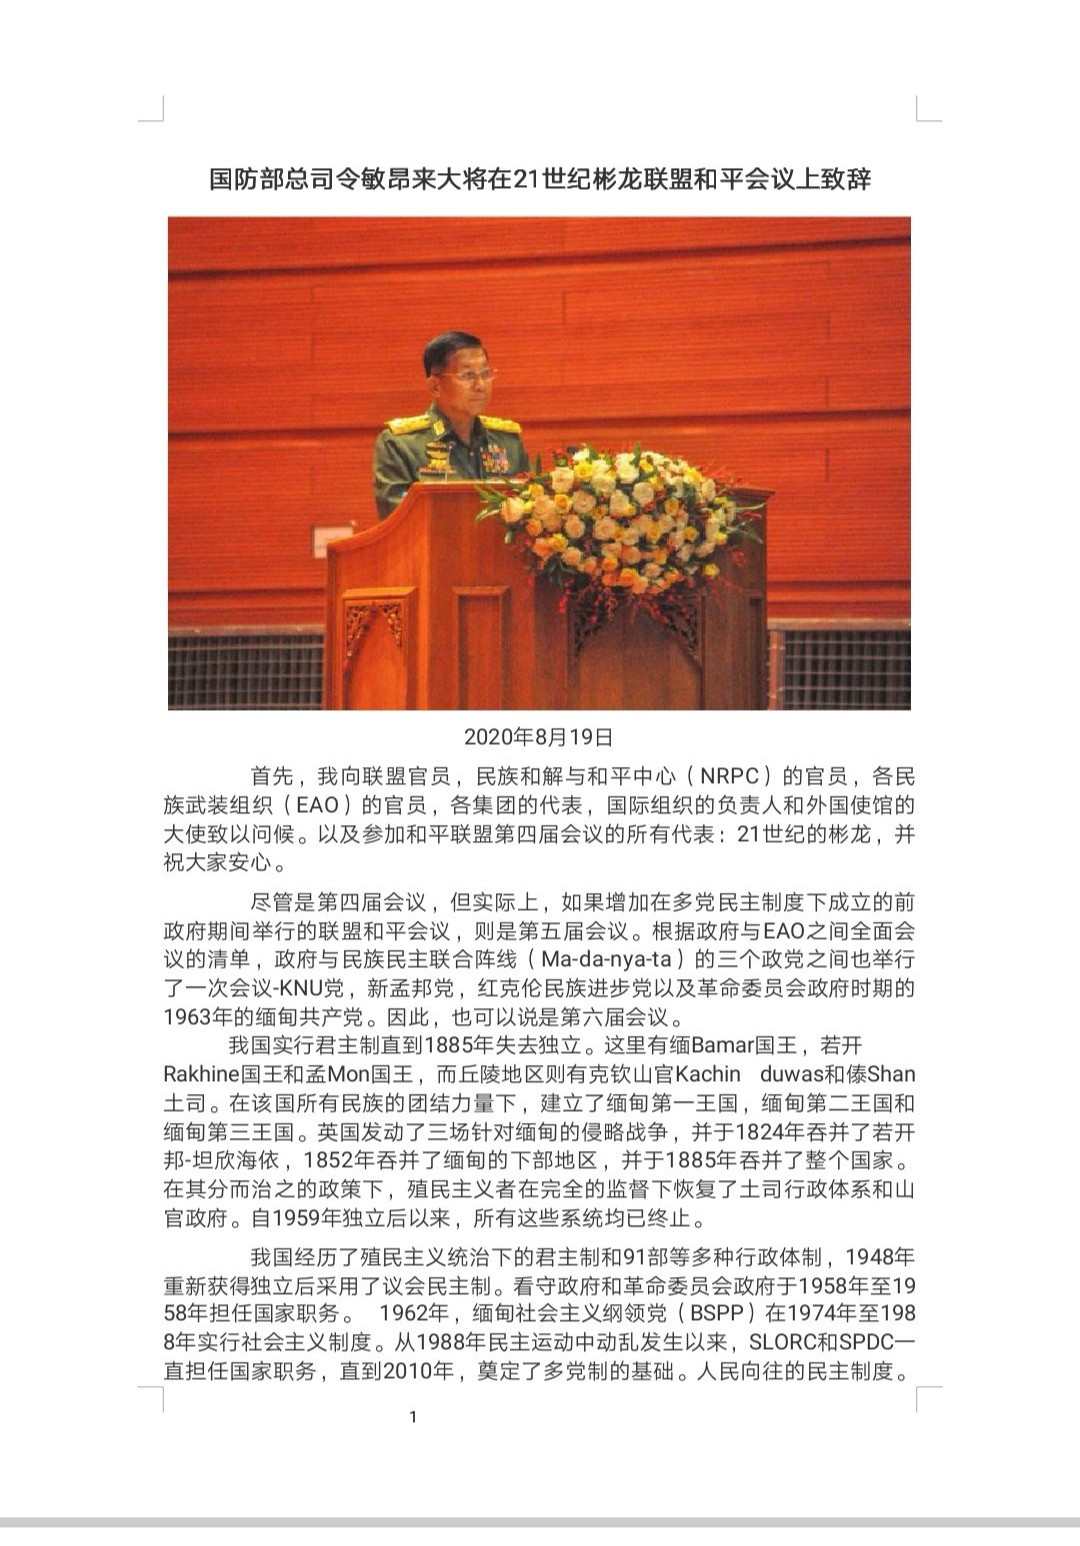 缅甸国防部总司令敏昂来大将在21彬龙大会联邦和平会议上致辞